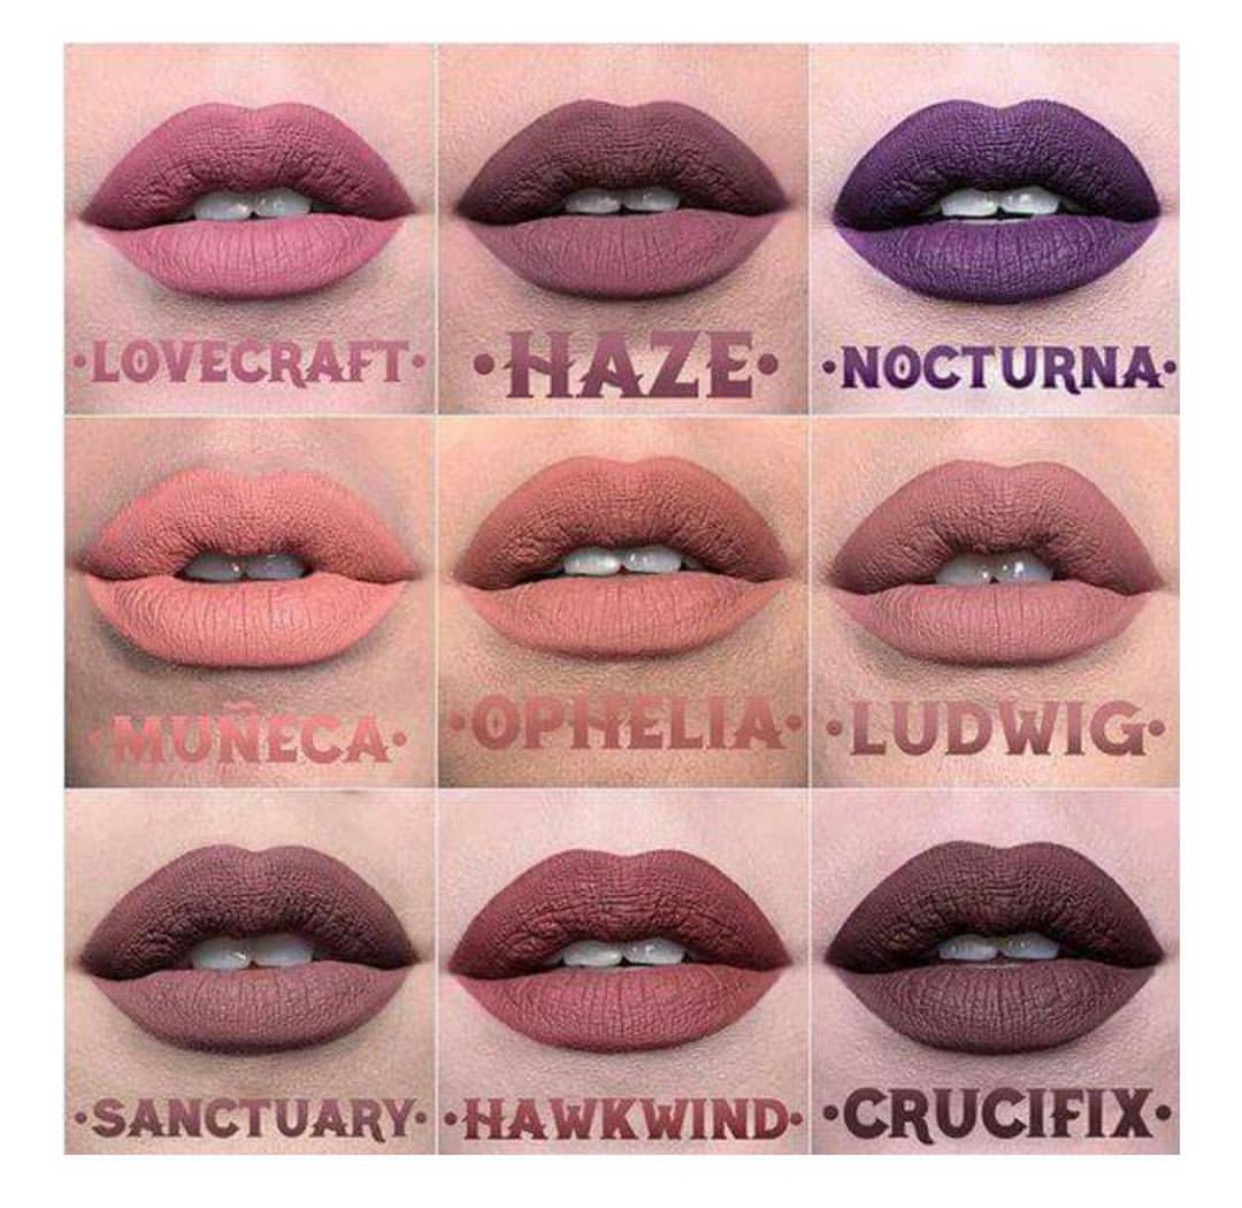 kat-von-d-everlasting-liquid-lipstick-new-shade-swatches